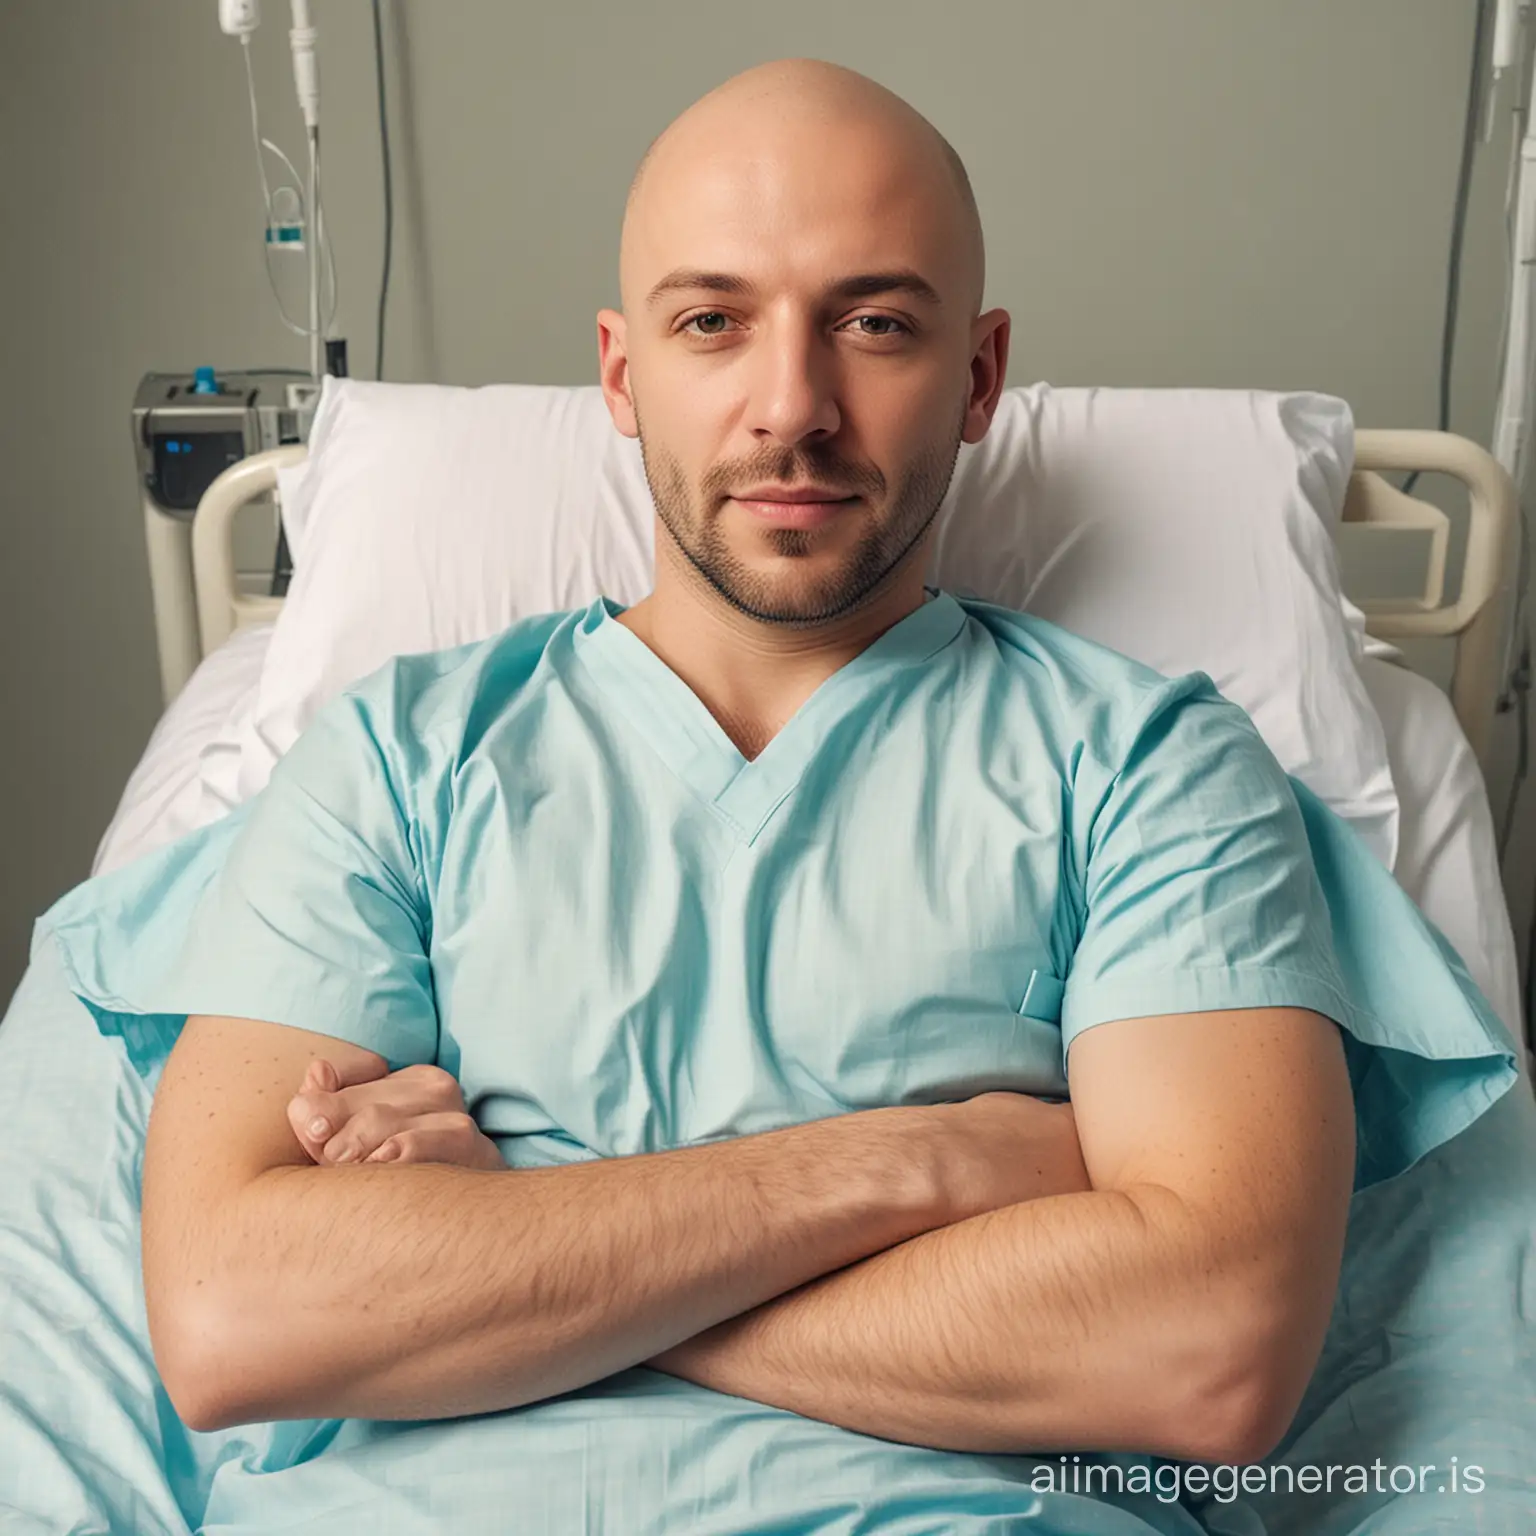 Bald-Man-Resting-on-Hospital-Bed